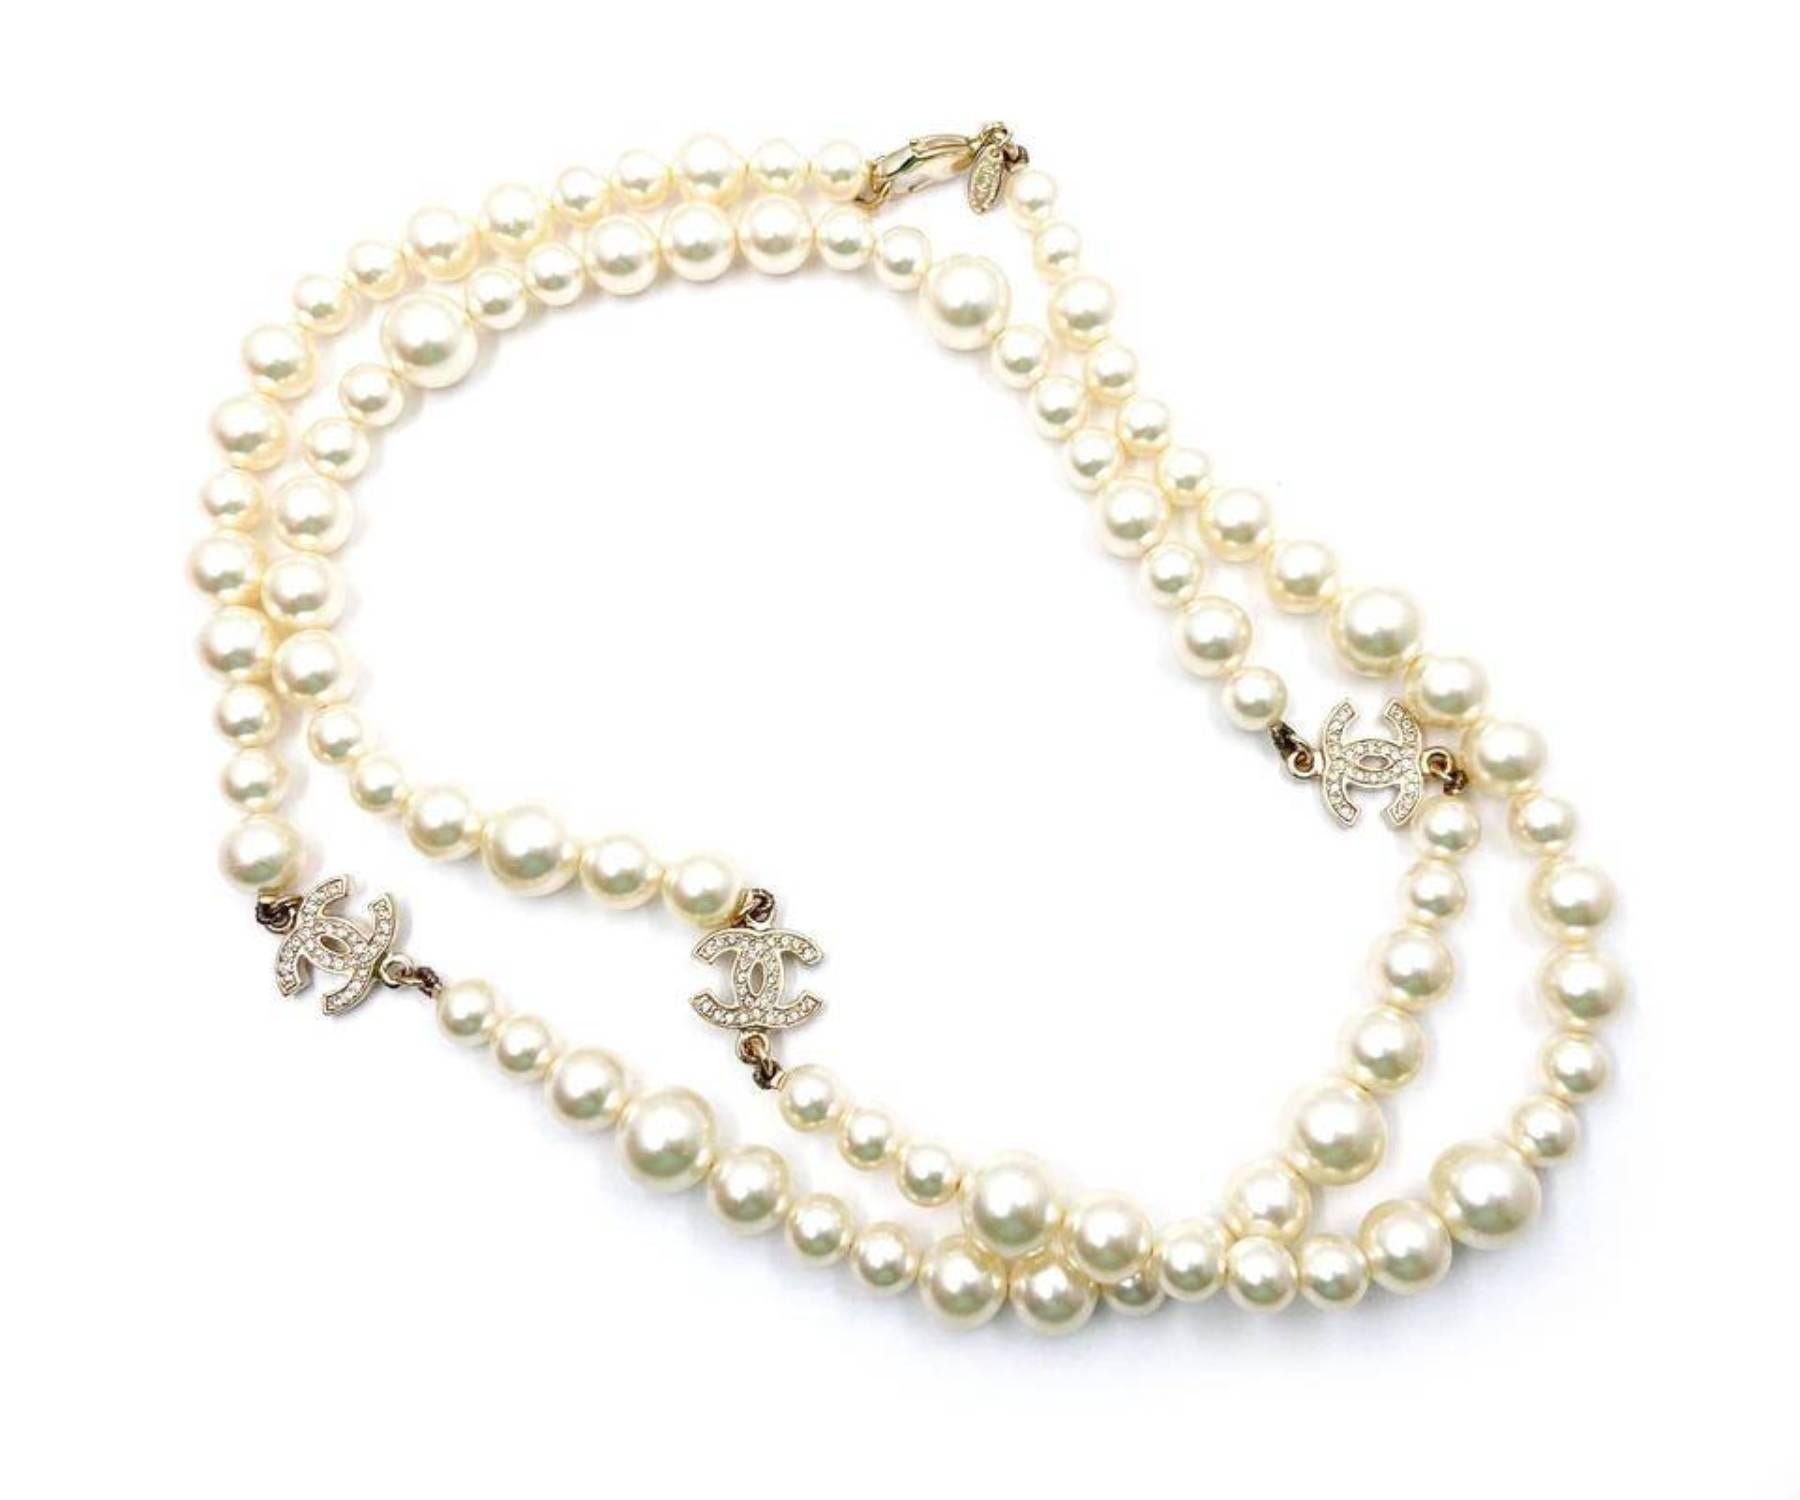 Chanel Classic 3 Collier long en or avec perles et cristaux CC

*Marked 10
*Fabriqué en France
*Livré avec sa boîte d'origine

-Elle mesure environ 36